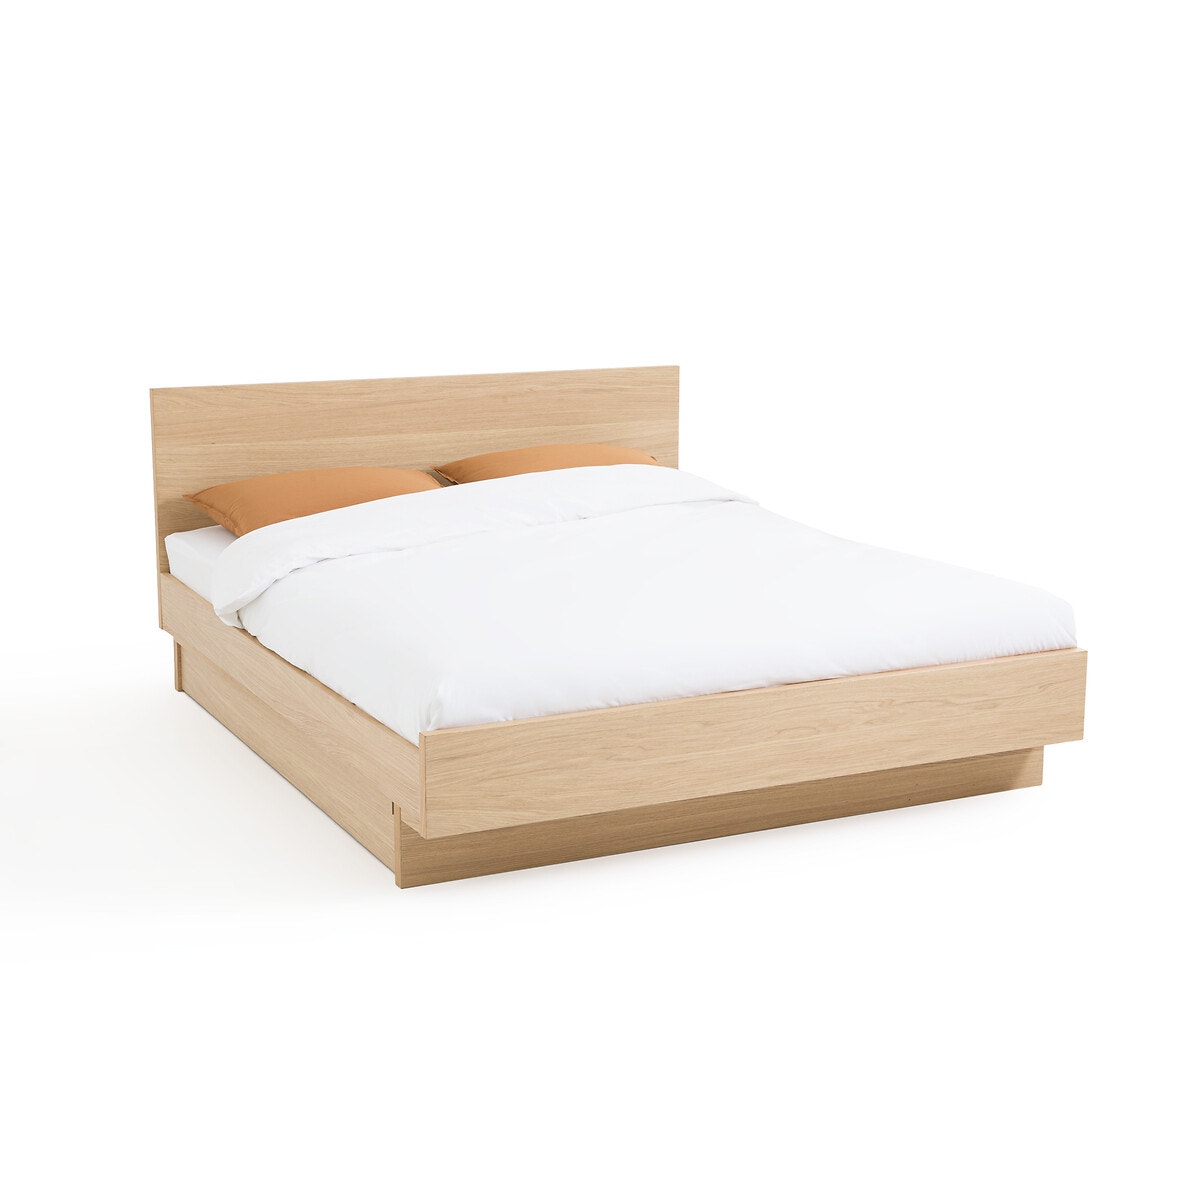 Κρεβάτι με καπλαμά ξύλου δρυ, Denho